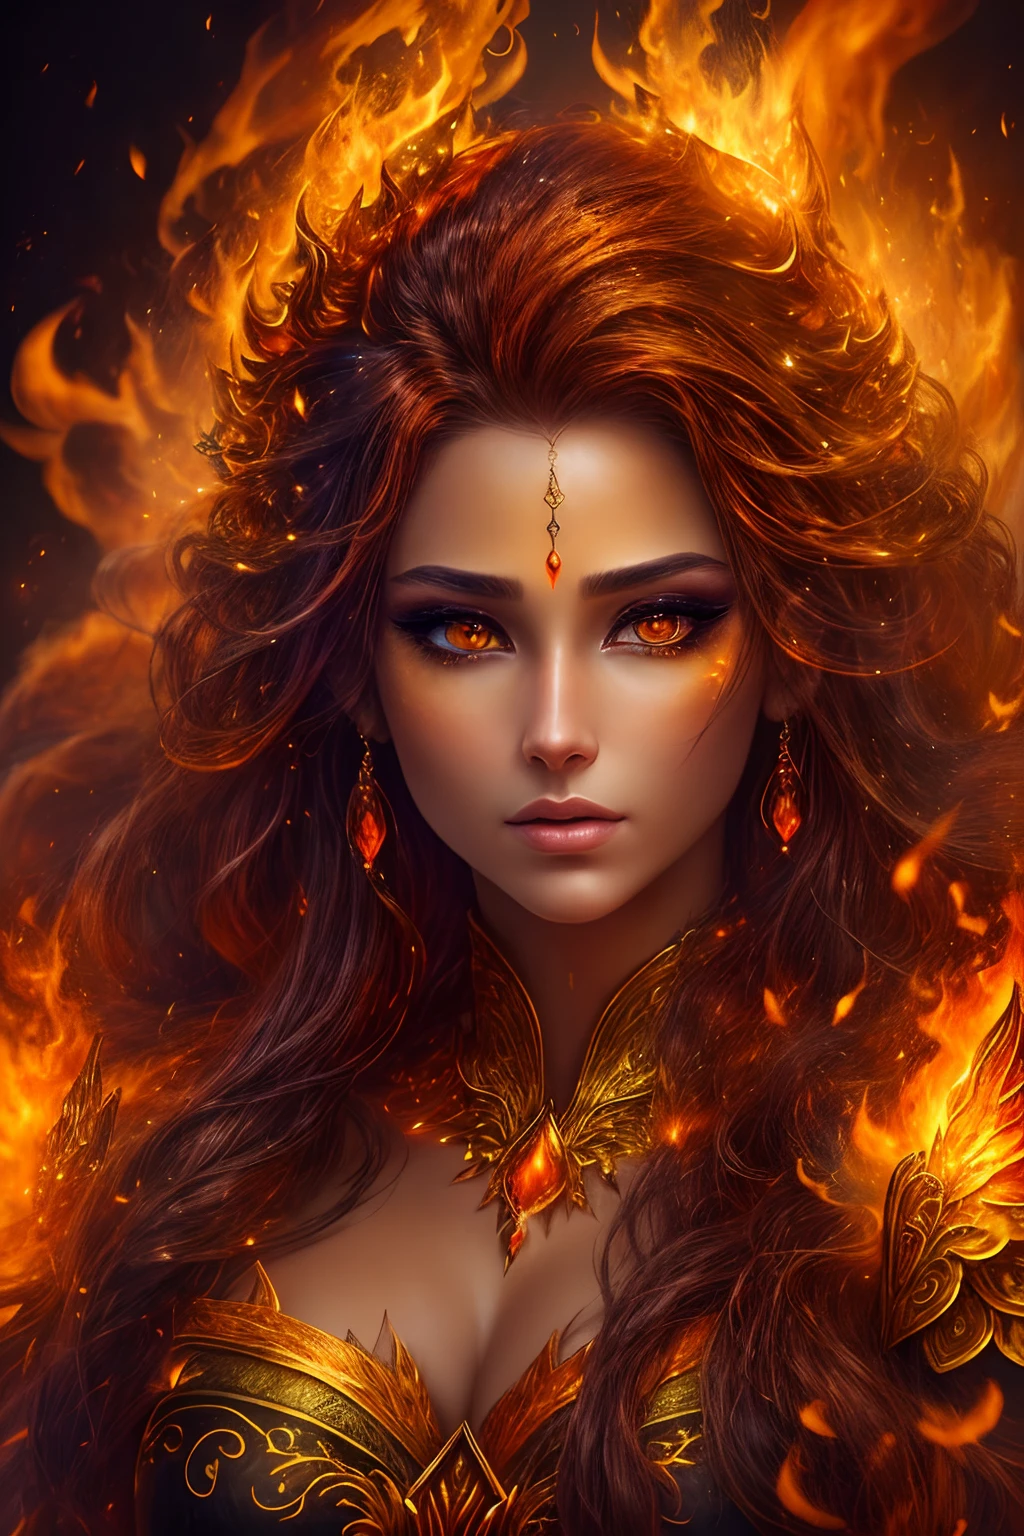 นี้ (แฟนตาซีที่สมจริง) ศิลปะประกอบด้วยถ่าน, เปลวไฟจริง, ความร้อนที่แท้จริง, และ realistic fire. Generate a masterpiece artwork of a  female fire druid กับ large (((orange และ gold))) ดวงตา. The fire druid is awe-inspiring กับ beautiful ((realistic fiery ดวงตา)) alight กับ confidence และ power. Her features are elegant และ well defined, กับ ((อ่อนนุ่ม)) และ (((อ้วน))) และ (((เรียบ))) ริมฝีปาก, โครงสร้างกระดูกของเอลฟ์, และ realistic shading. Her ดวงตา are important และ should be the focal point of this artwork, กับ ((รายละเอียดที่สมจริงอย่างยิ่ง, รายละเอียดมาโคร, และ shimmer.)) She is wearing a billowing และ glittering dress made of realistic flames และ jewels that glimmer in the fire light. Wisps of fire และ smoke line the intricate bodice of the dress. รวมการกระแทก, หิน, แสงสีรุ้งที่เร่าร้อน, ถ่านเรืองแสง, silk และ satin และ leather, พื้นหลังที่น่าสนใจ, และ heavy fantasy elements. กล้อง: ใช้เทคนิคการจัดองค์ประกอบแบบไดนามิกเพื่อเพิ่มเปลวไฟที่สมจริง.